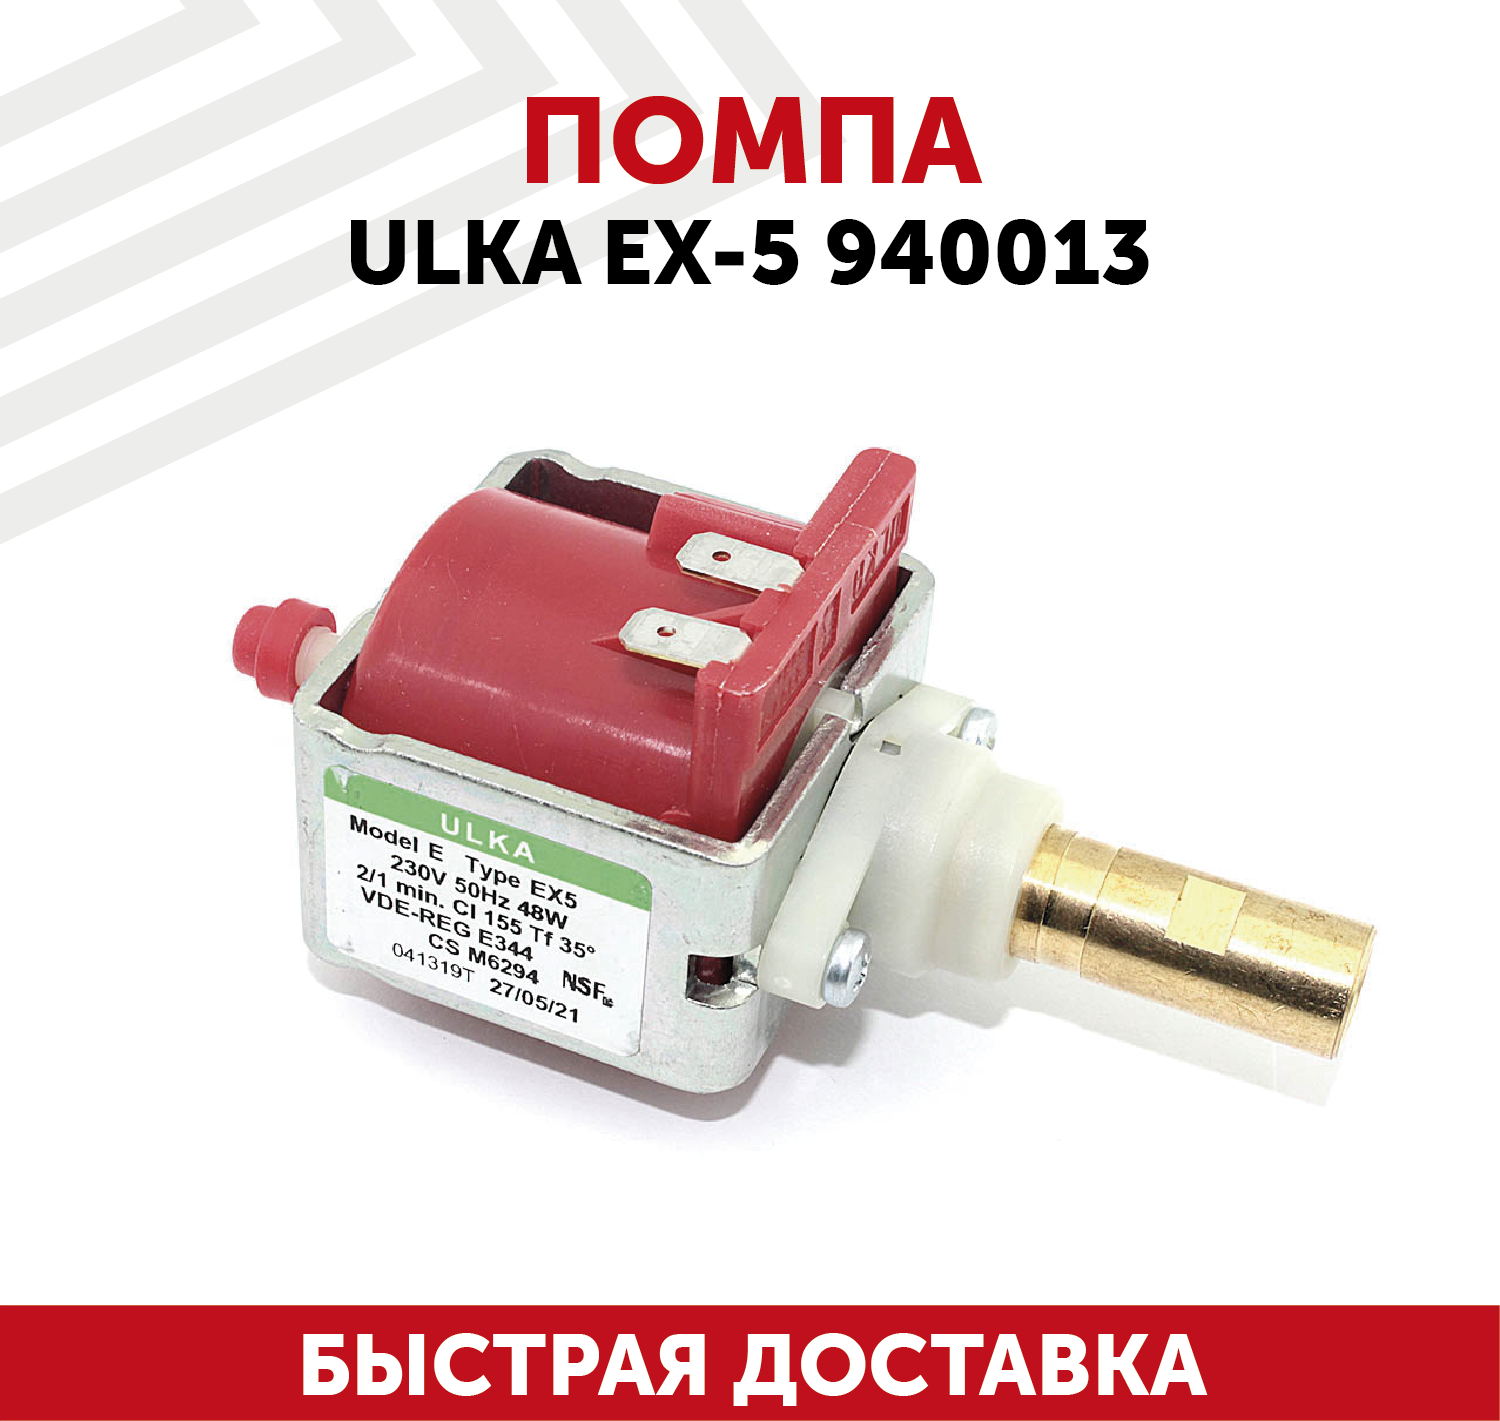 Помпа для кофемашины Ulka EX-5 940013